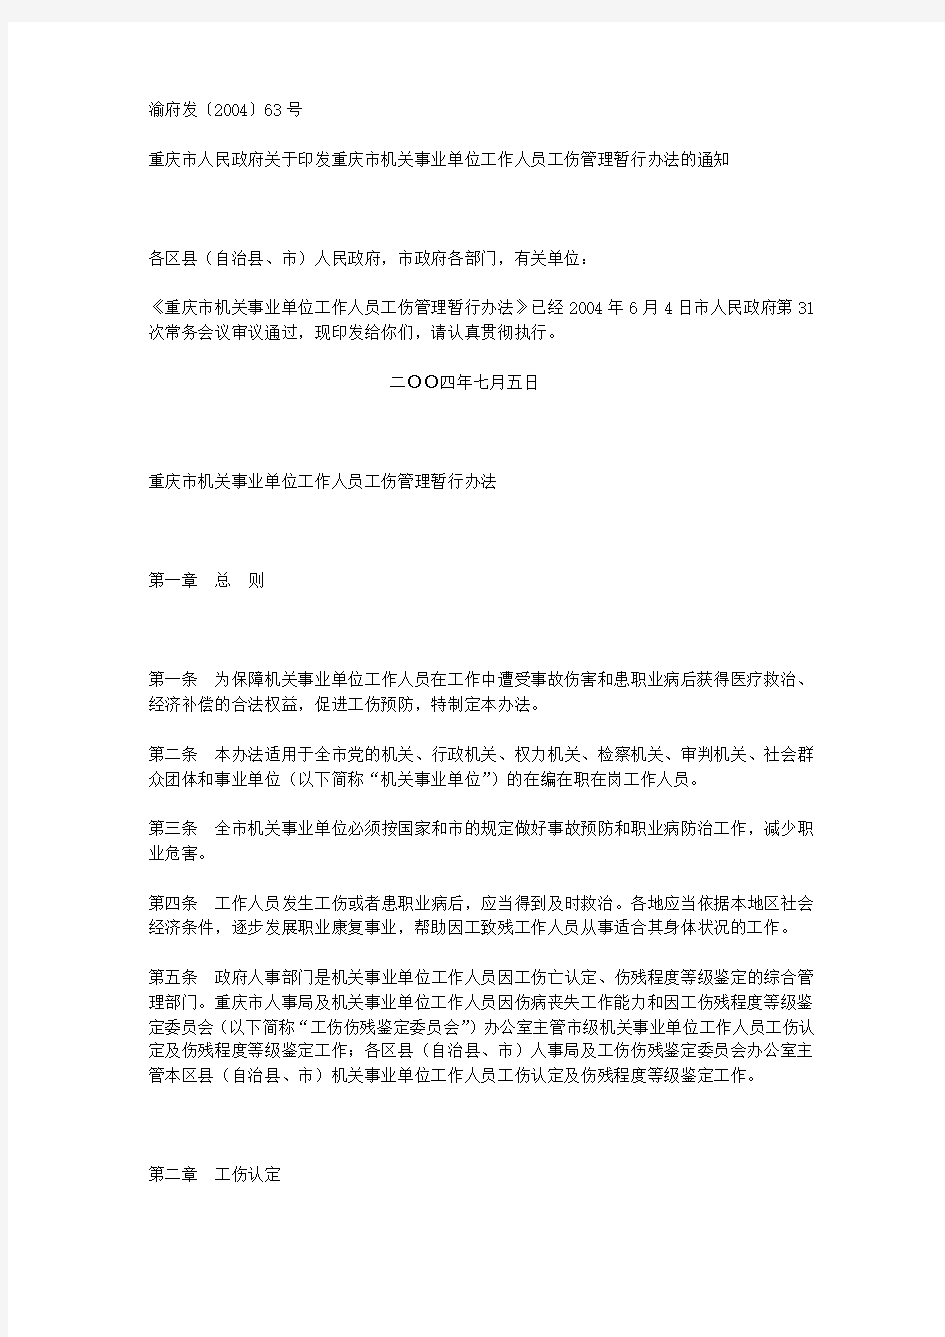 重庆市机关事业单位工作人员工伤管理暂行办法